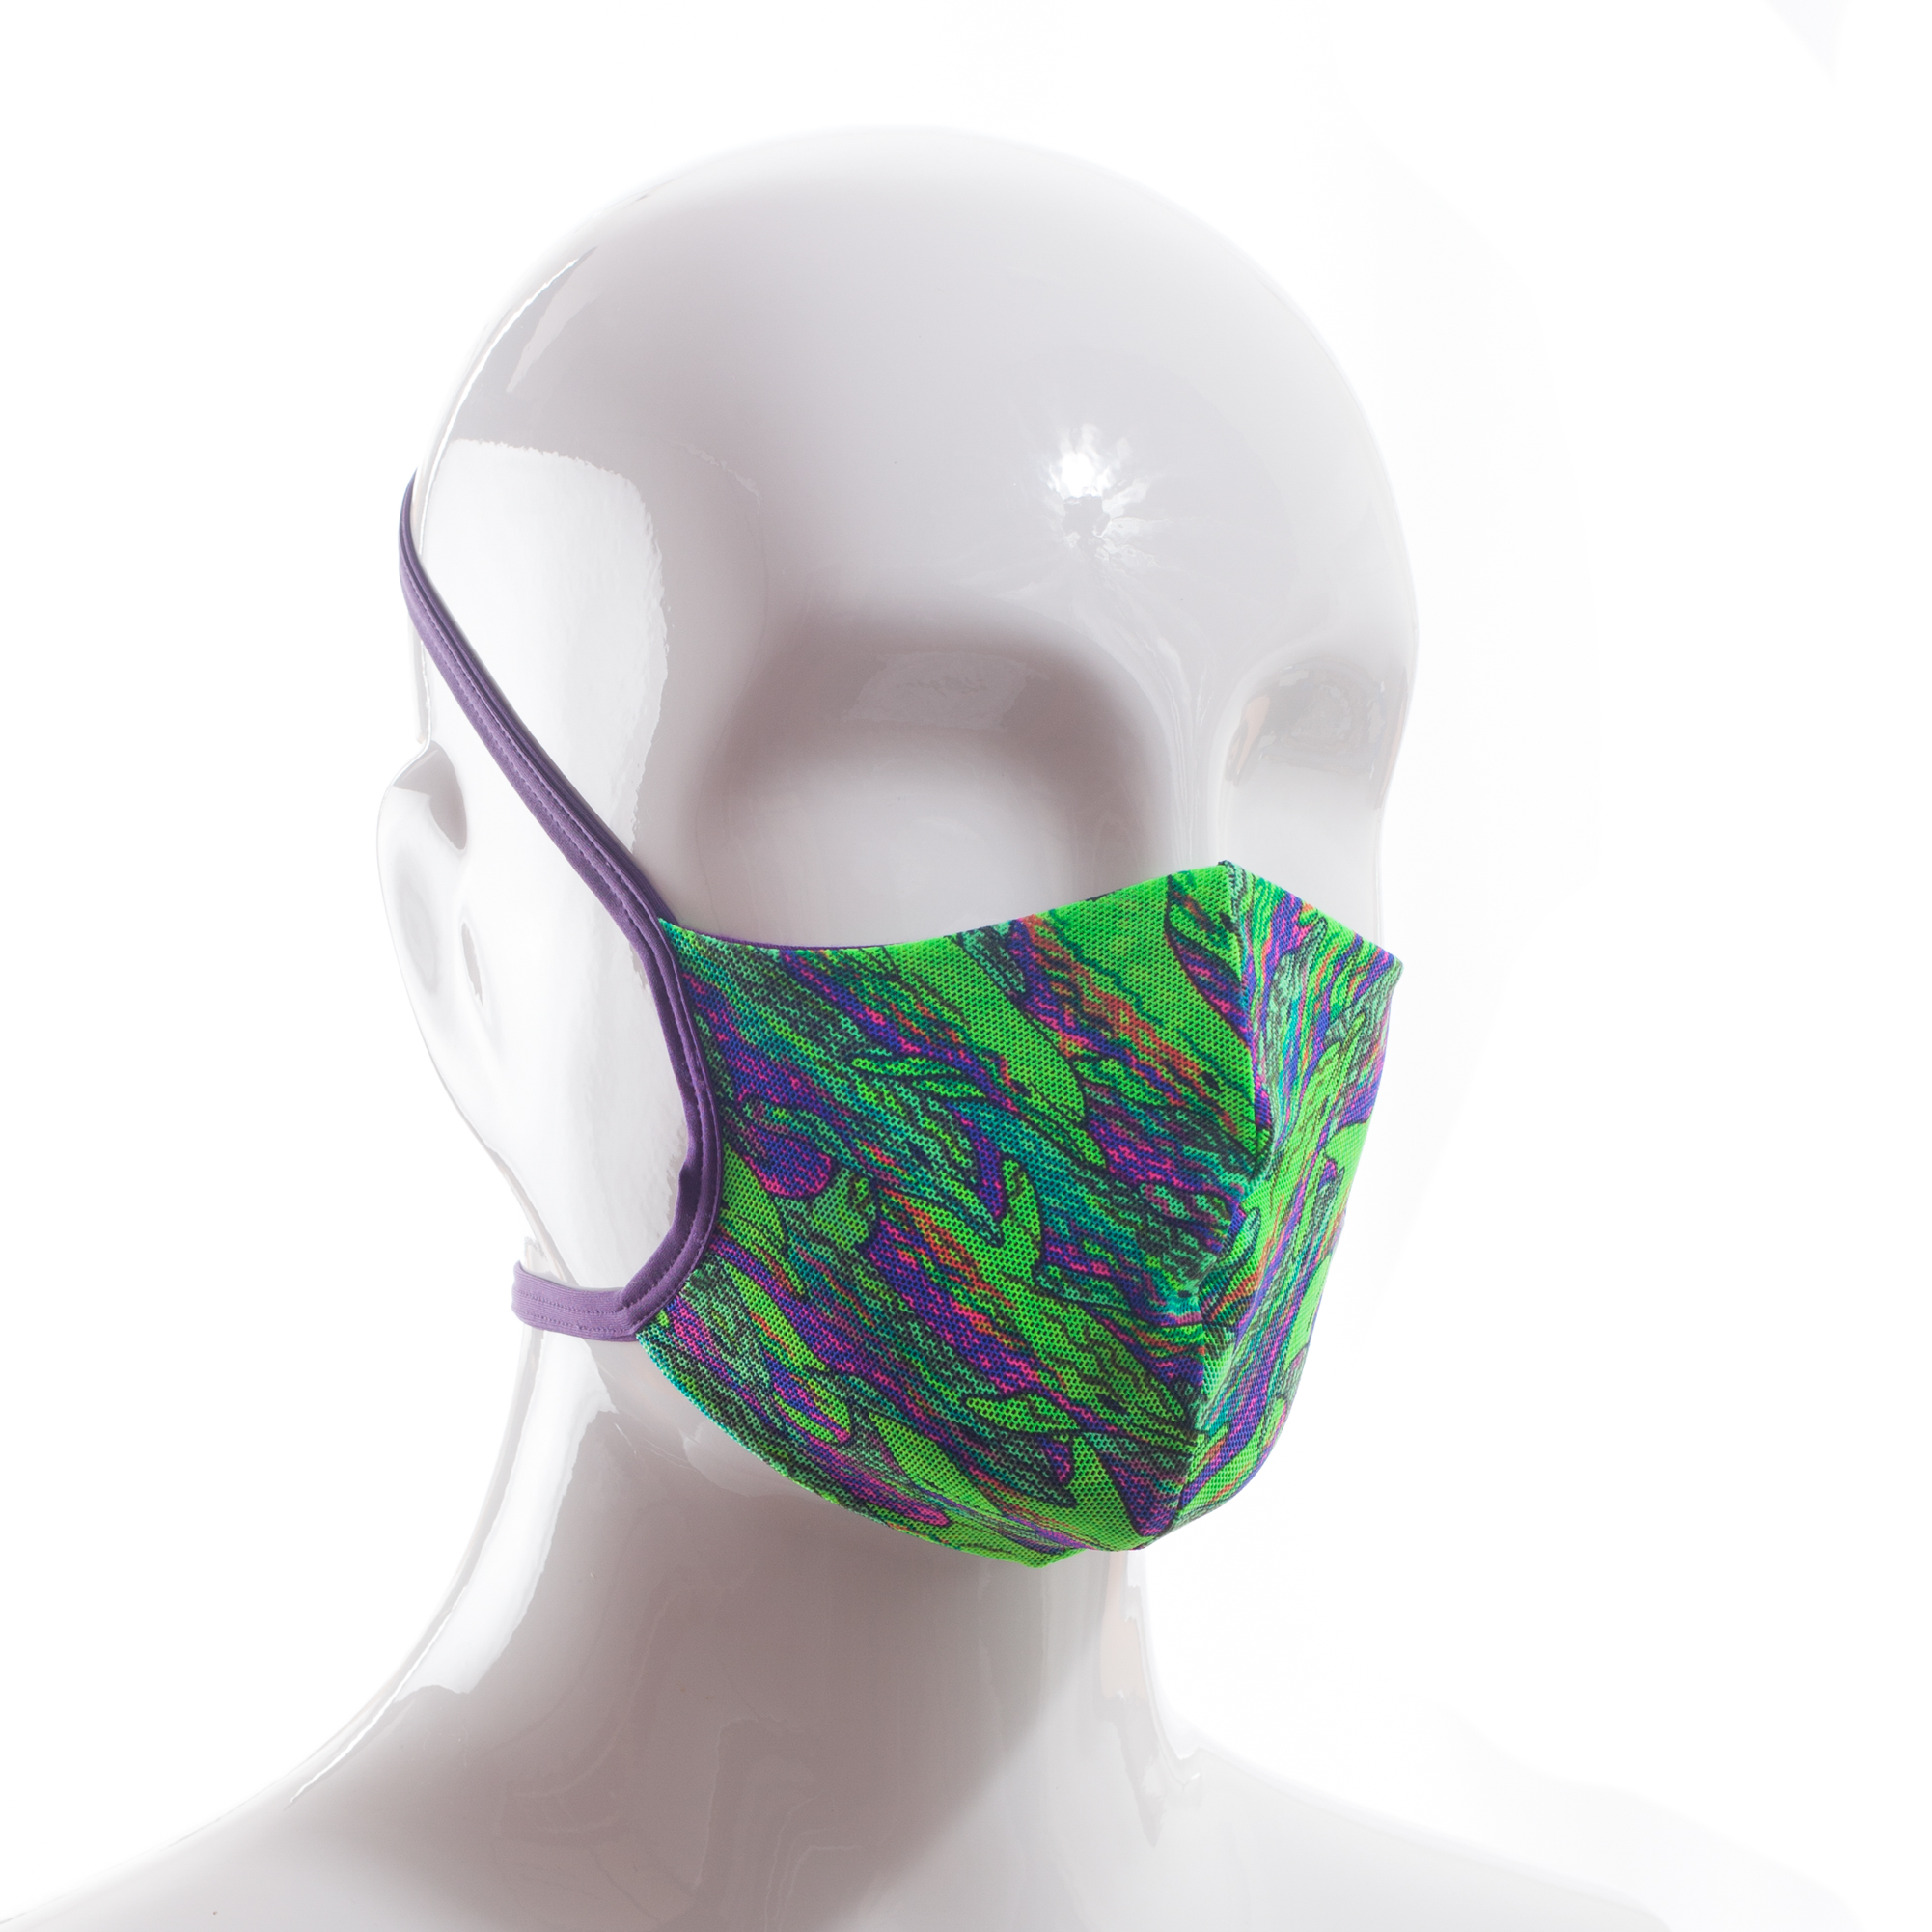 Die Baumwoll-Polyester Mund-Nasen Maske BWPM4 von der Wonneberger Manufaktur ist eine textile Behelfsmaske, kein zertifizierter Mundschutz.

Sie schützt nur bedingt vor Ansteckung. Ihr eigentlicher Zweck ist es, den Atem des Trägers zu filtern und dadurch seine Umgebung zu schützen.

Daher muss die…